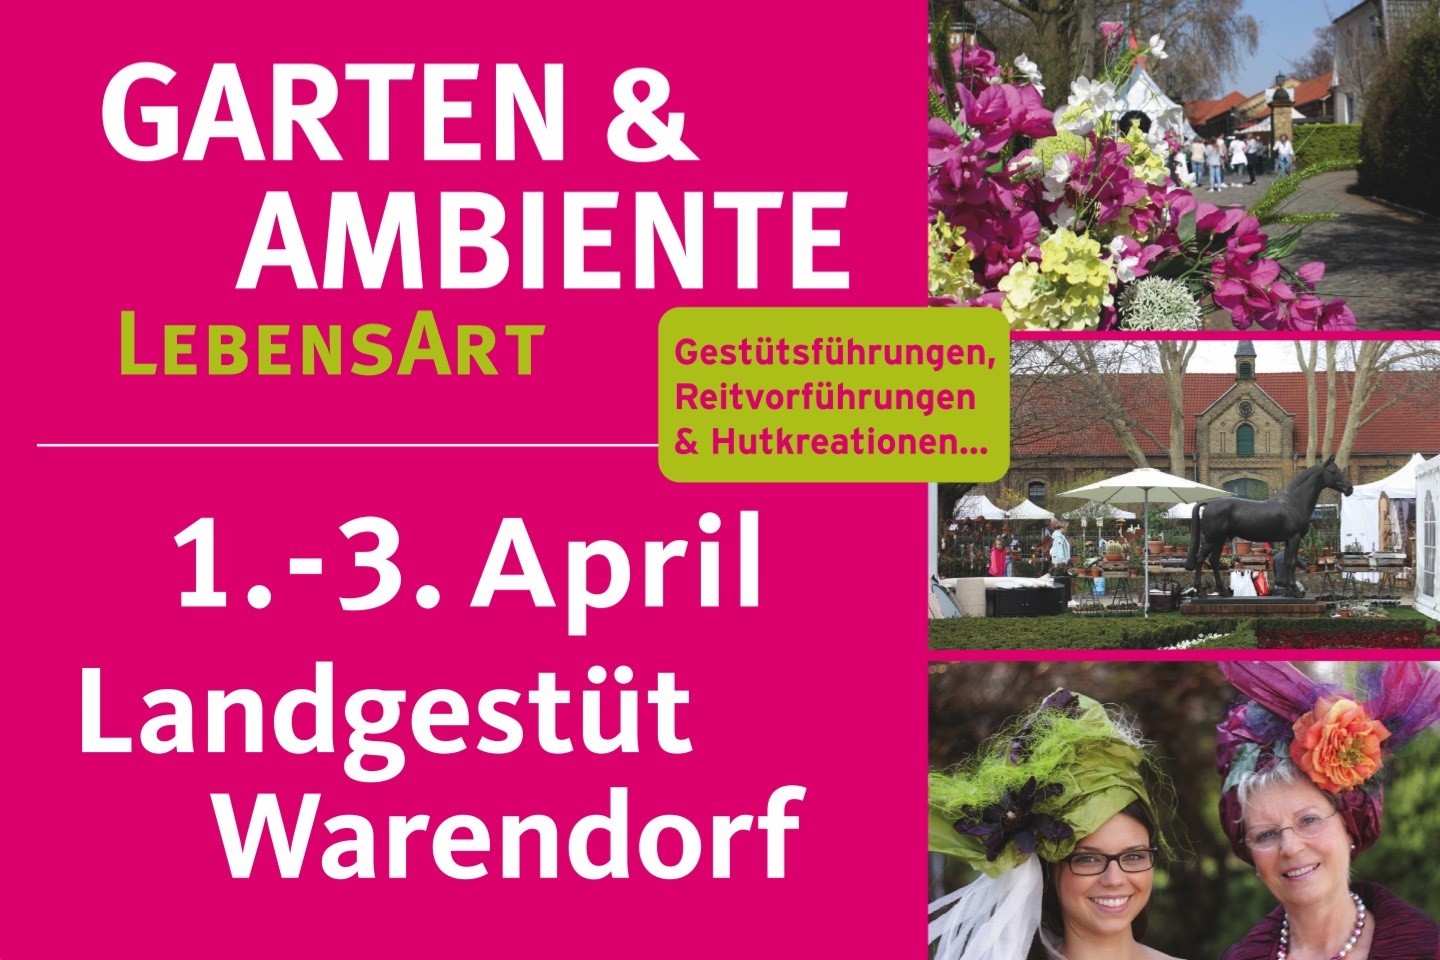 Garten,Ambiente,LebensART,C und S GmbH,Warendorf,Landgestüt,Reiten,Deko,